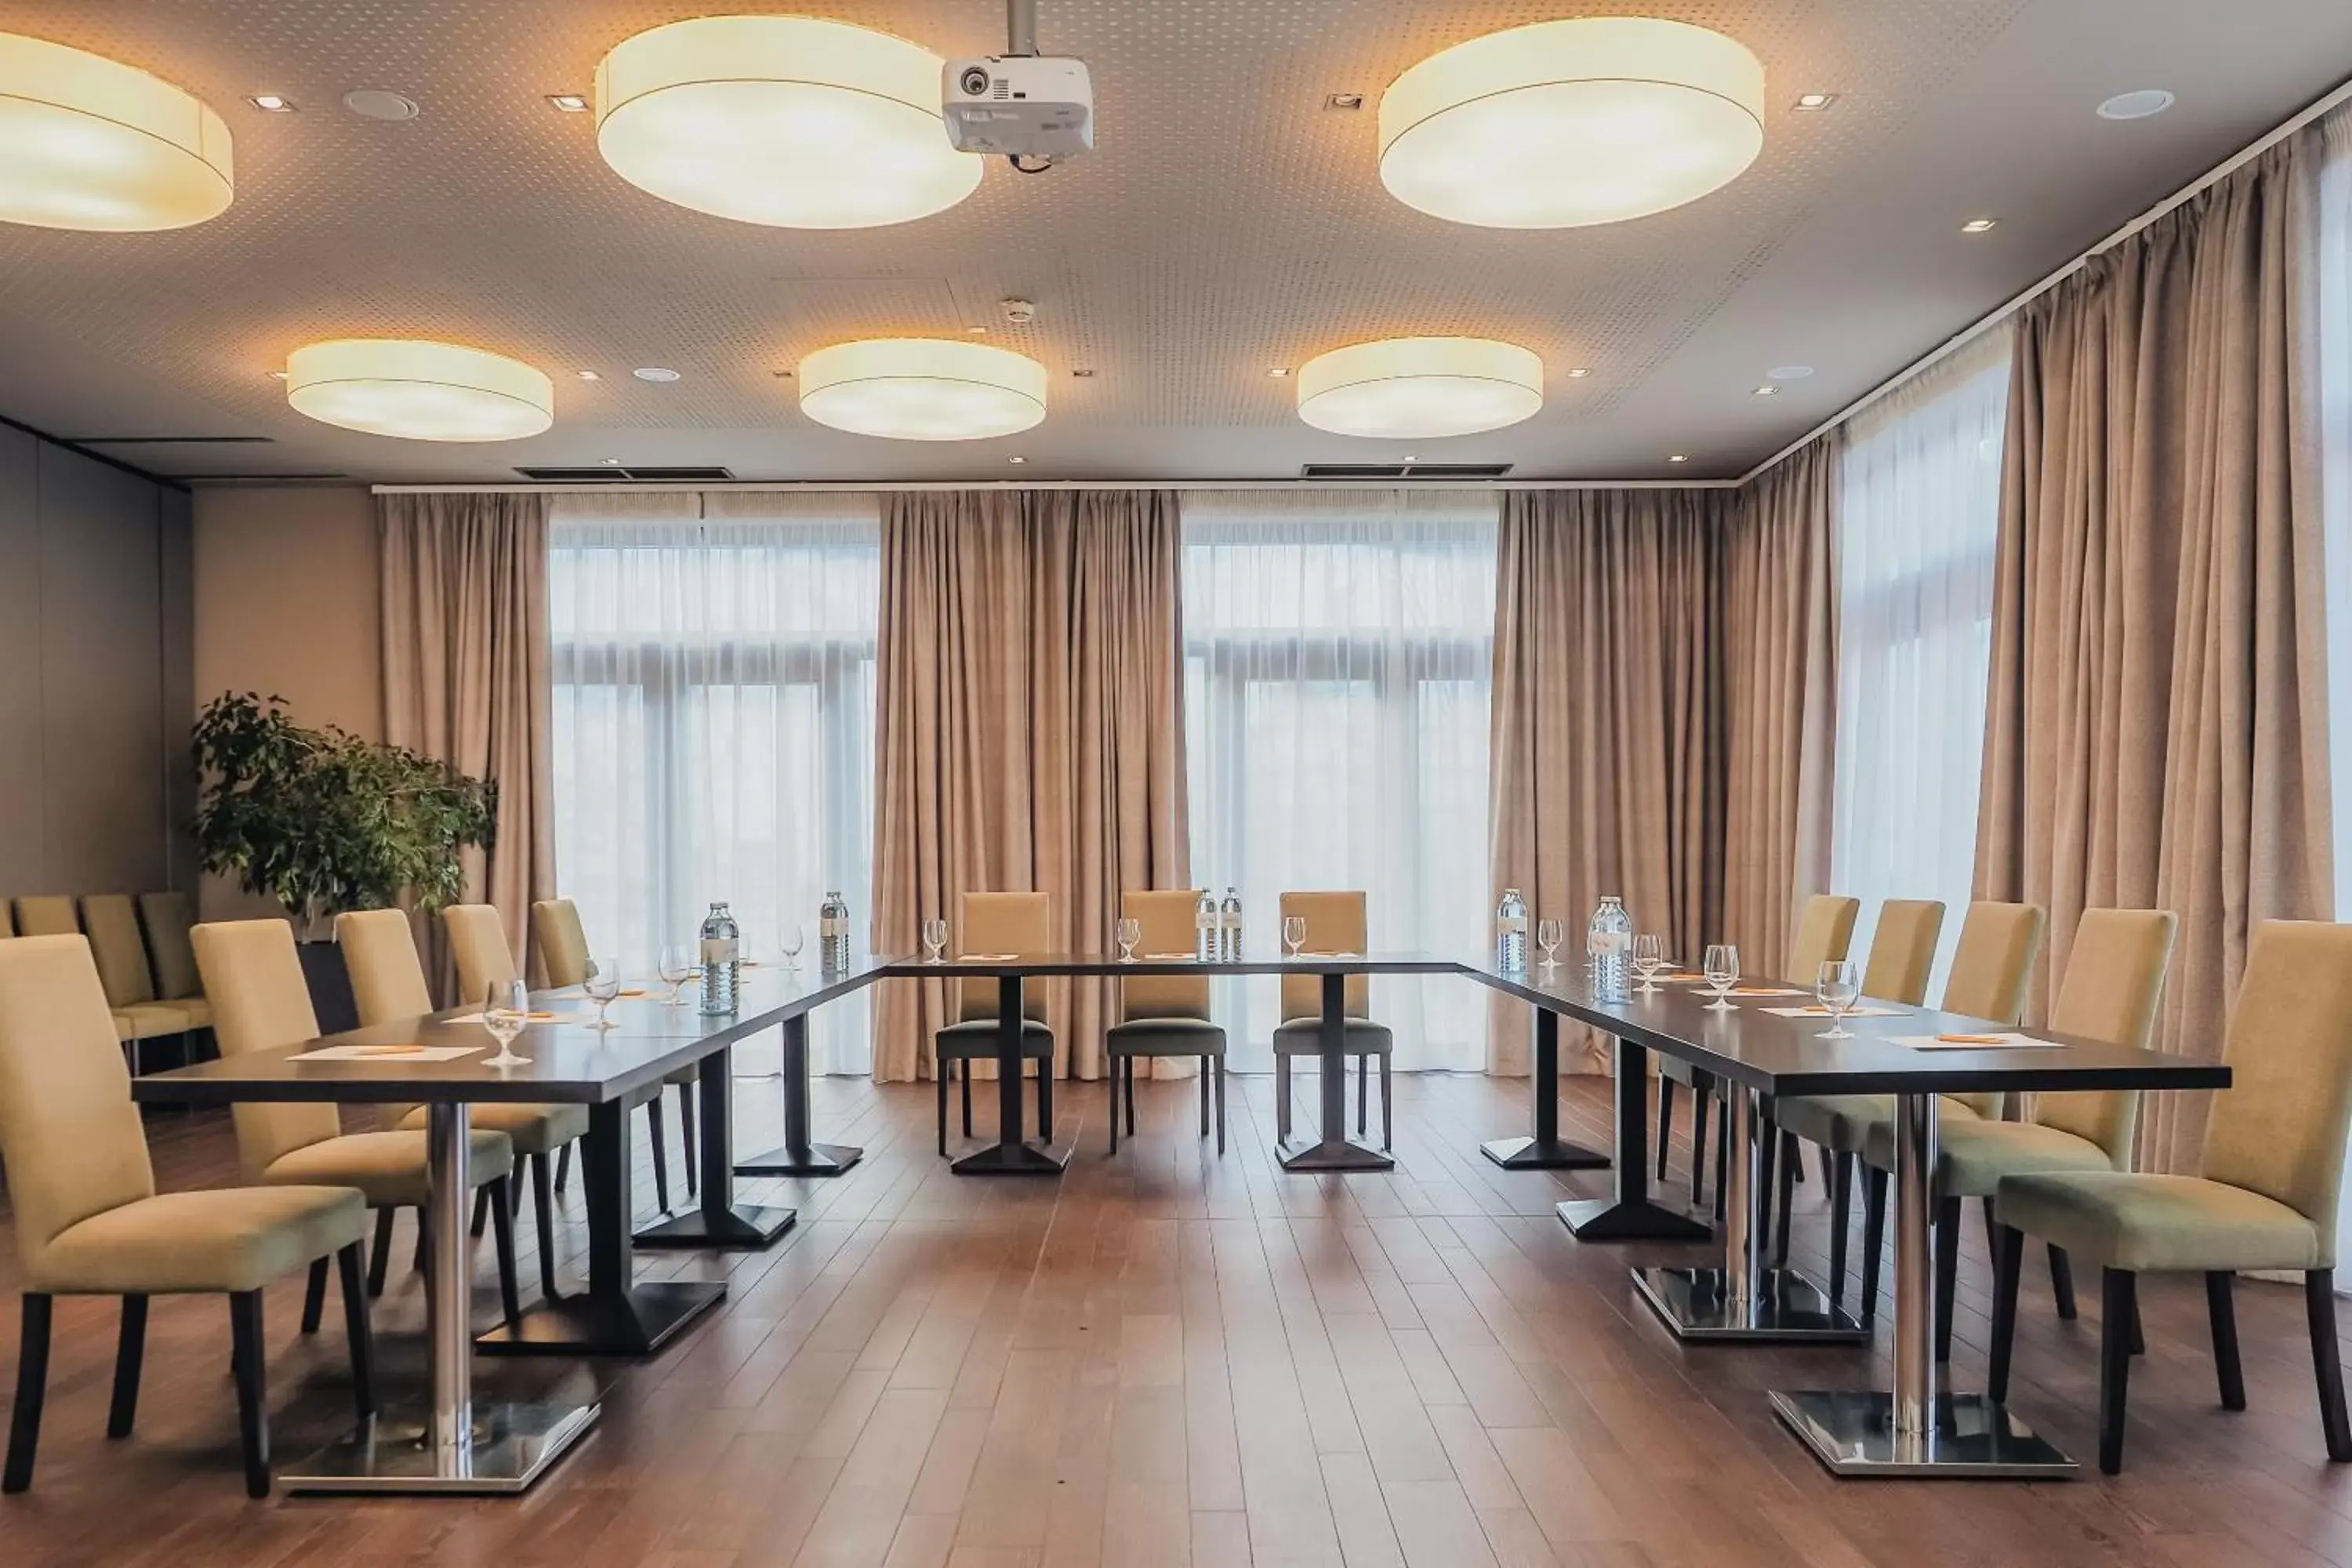 Meeting/conference room in Relax Resort Hotel Kreischberg